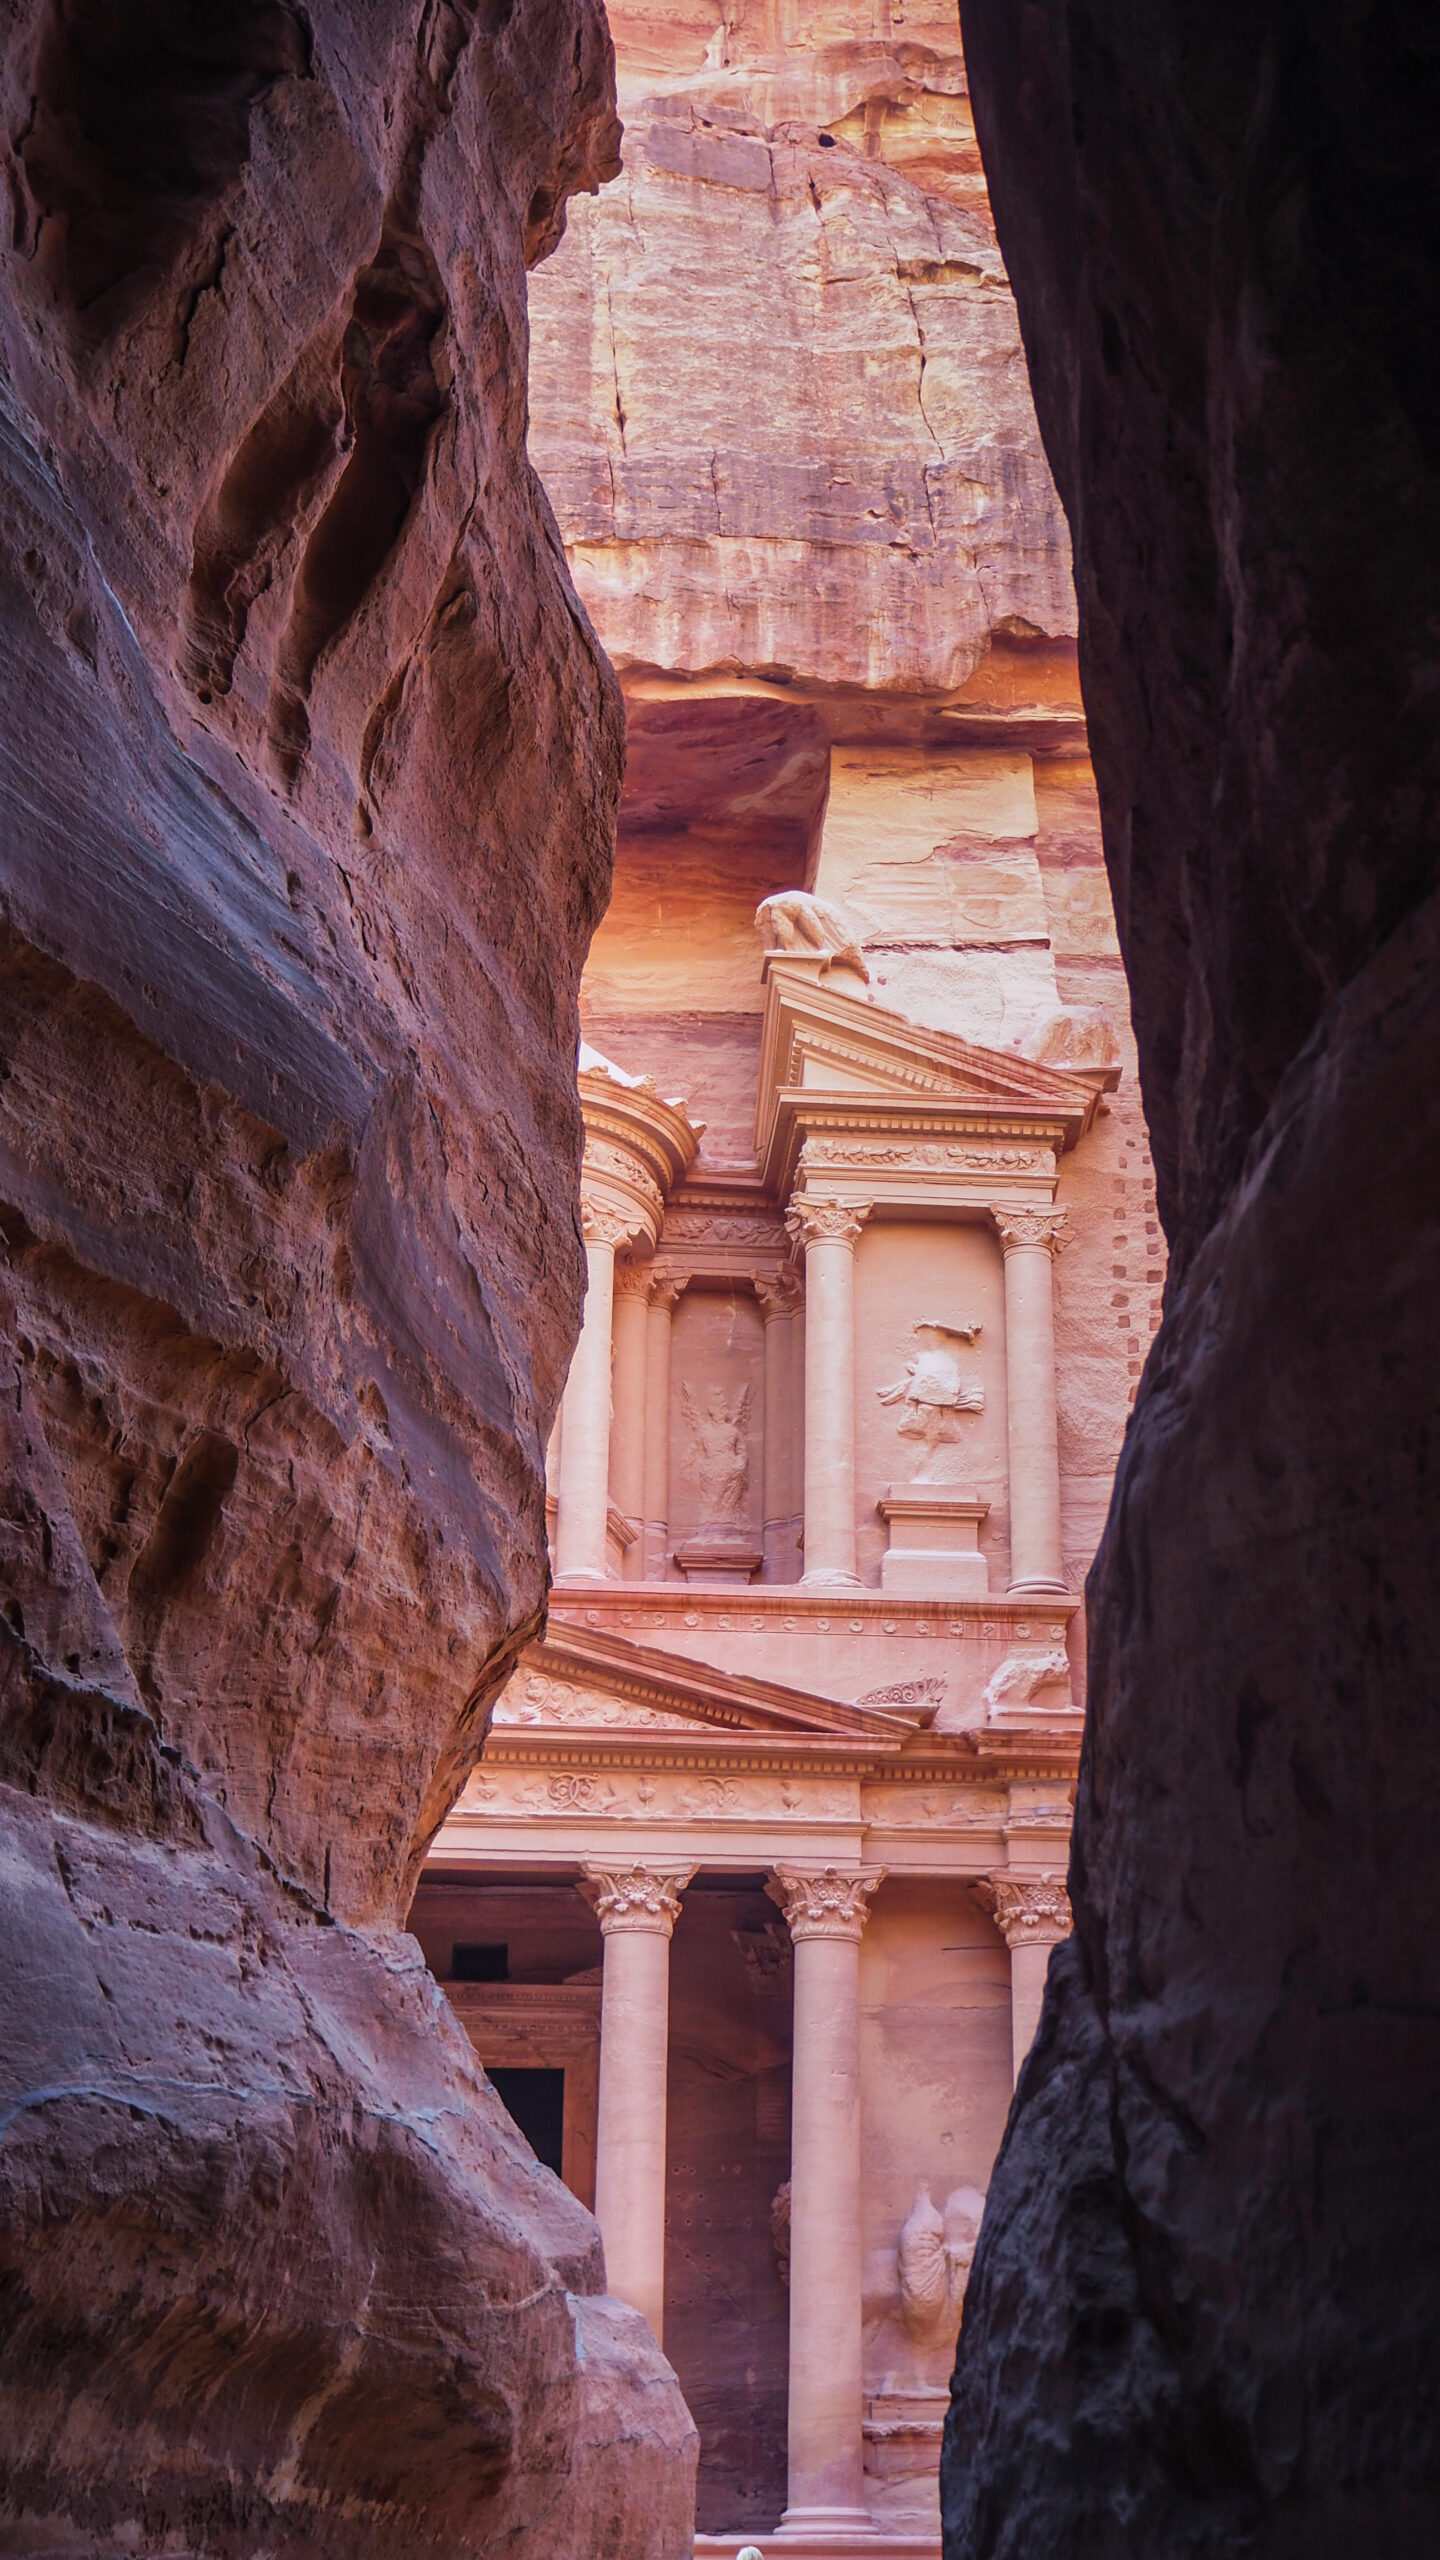 Petra - Al Khazneh - le trésor - Jordanie - voyage en famille avec enfants - La Famille nomade